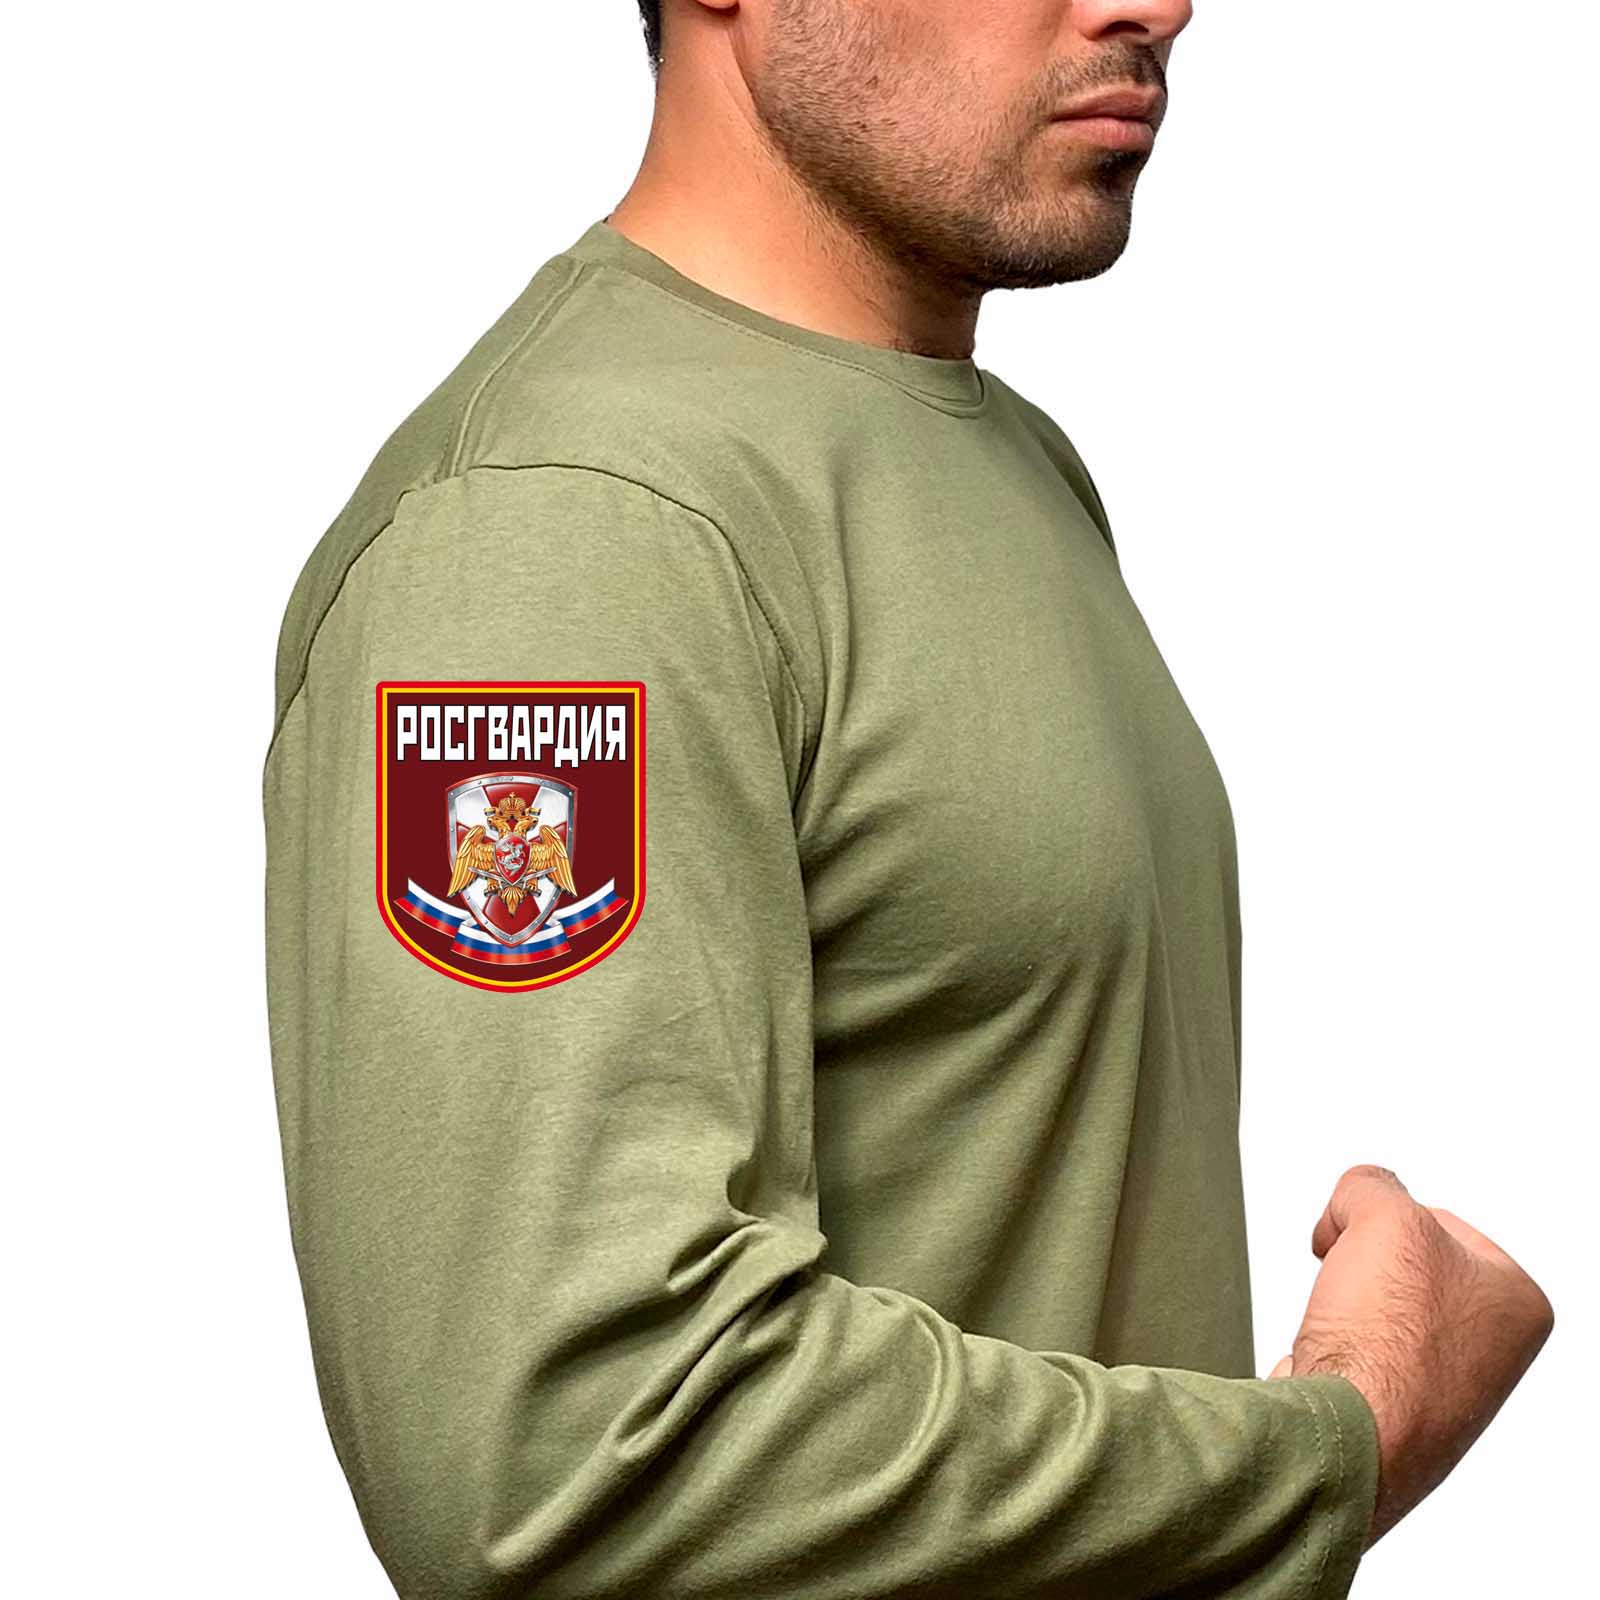 Купить футболку с длинным рукавом милитари с термотрансфером Росгвардия с доставкой